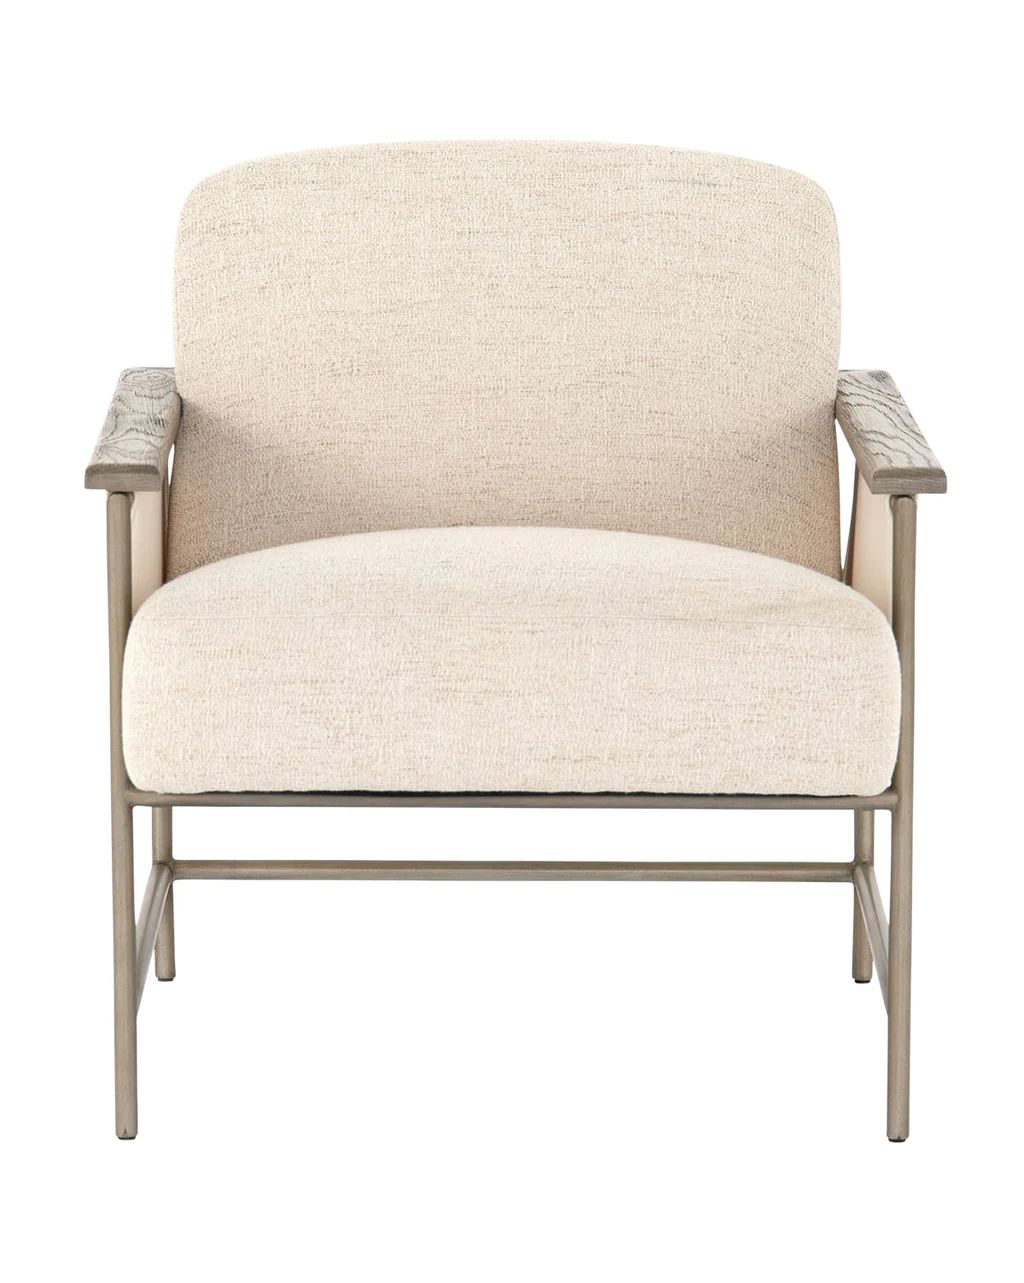 Arlette Chair | McGee & Co.